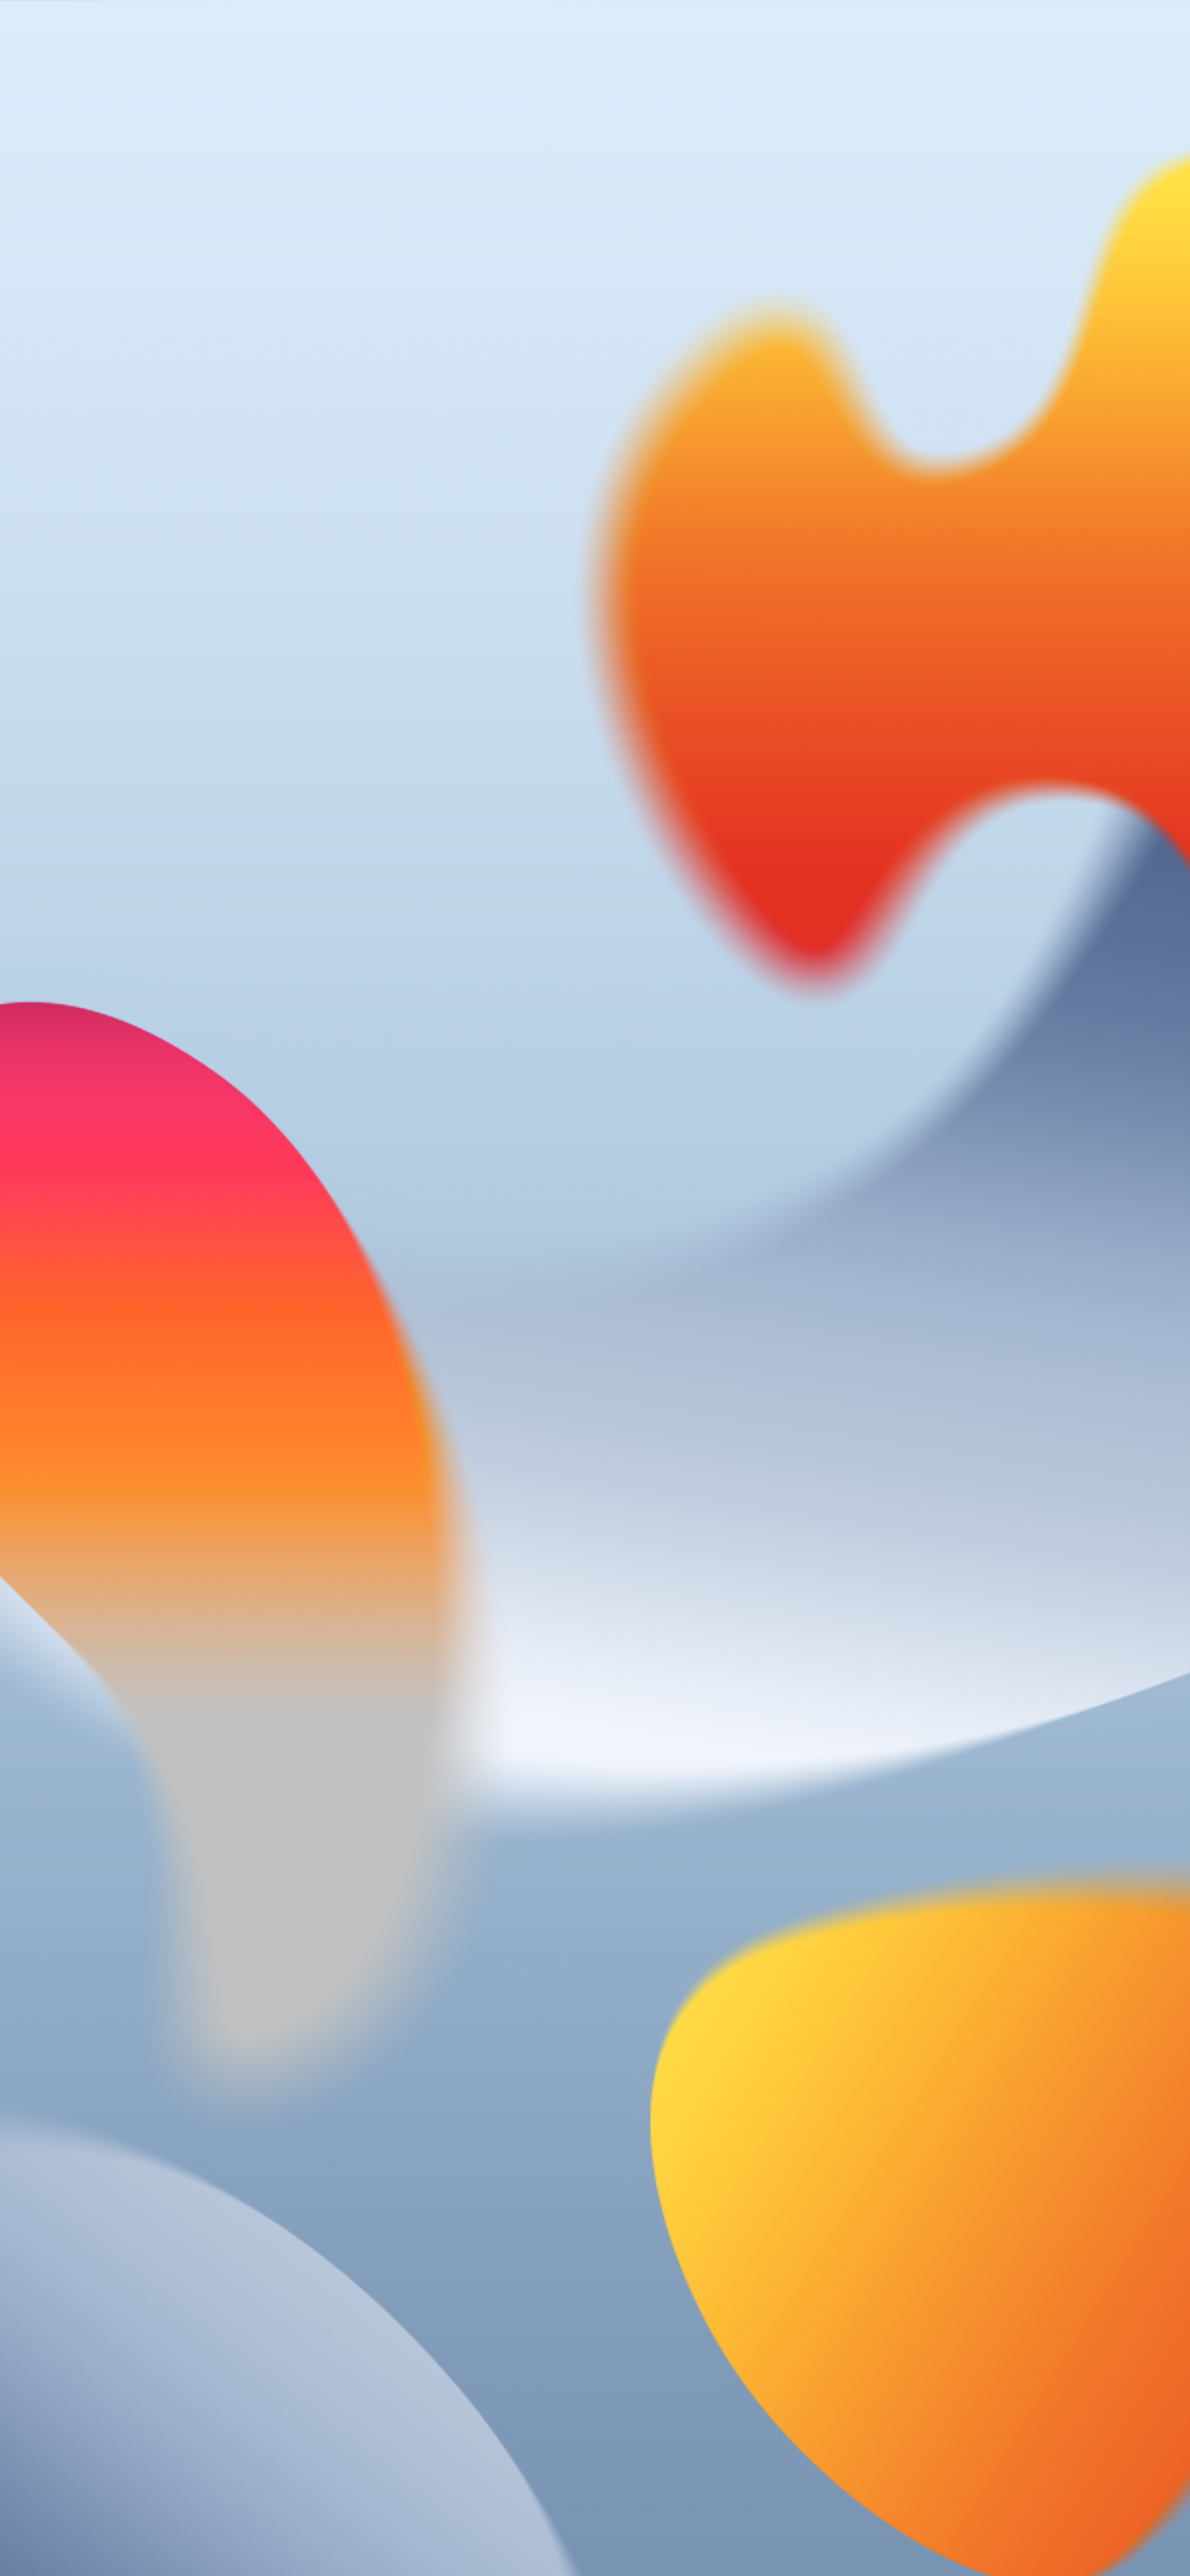 Bạn yêu thích gam màu cam và xám trên giao diện iPhone? Hãy nhấp vào ảnh liên quan để khám phá nhiều hơn về giao diện iOS 16 đầy tinh tế với những thay đổi về màu sắc độc đáo.